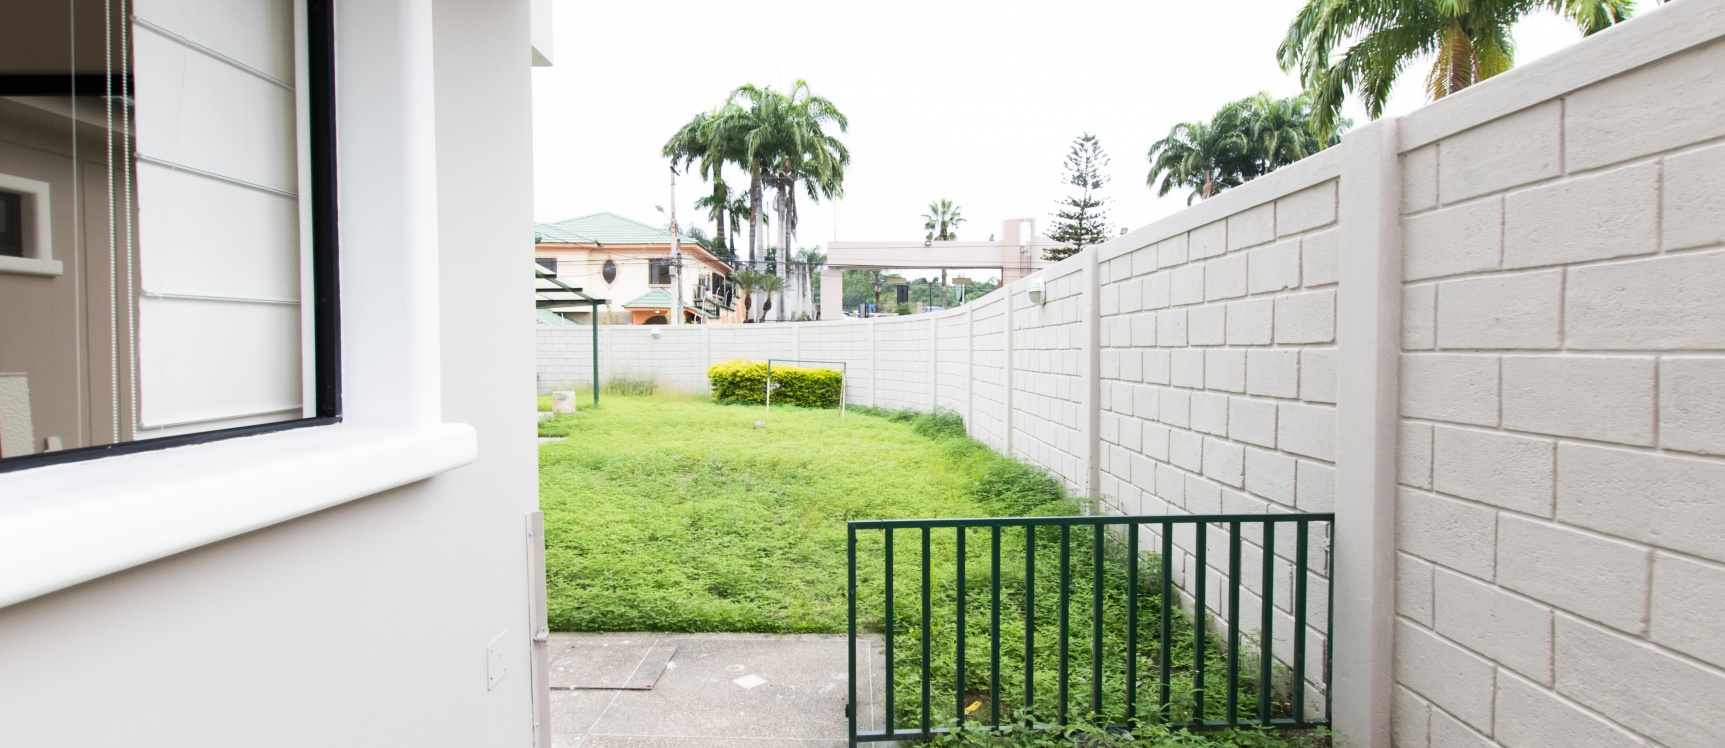 GeoBienes - Casa en alquiler ubicada en cdla ceibos norte - Plusvalia Guayaquil Casas de venta y alquiler Inmobiliaria Ecuador